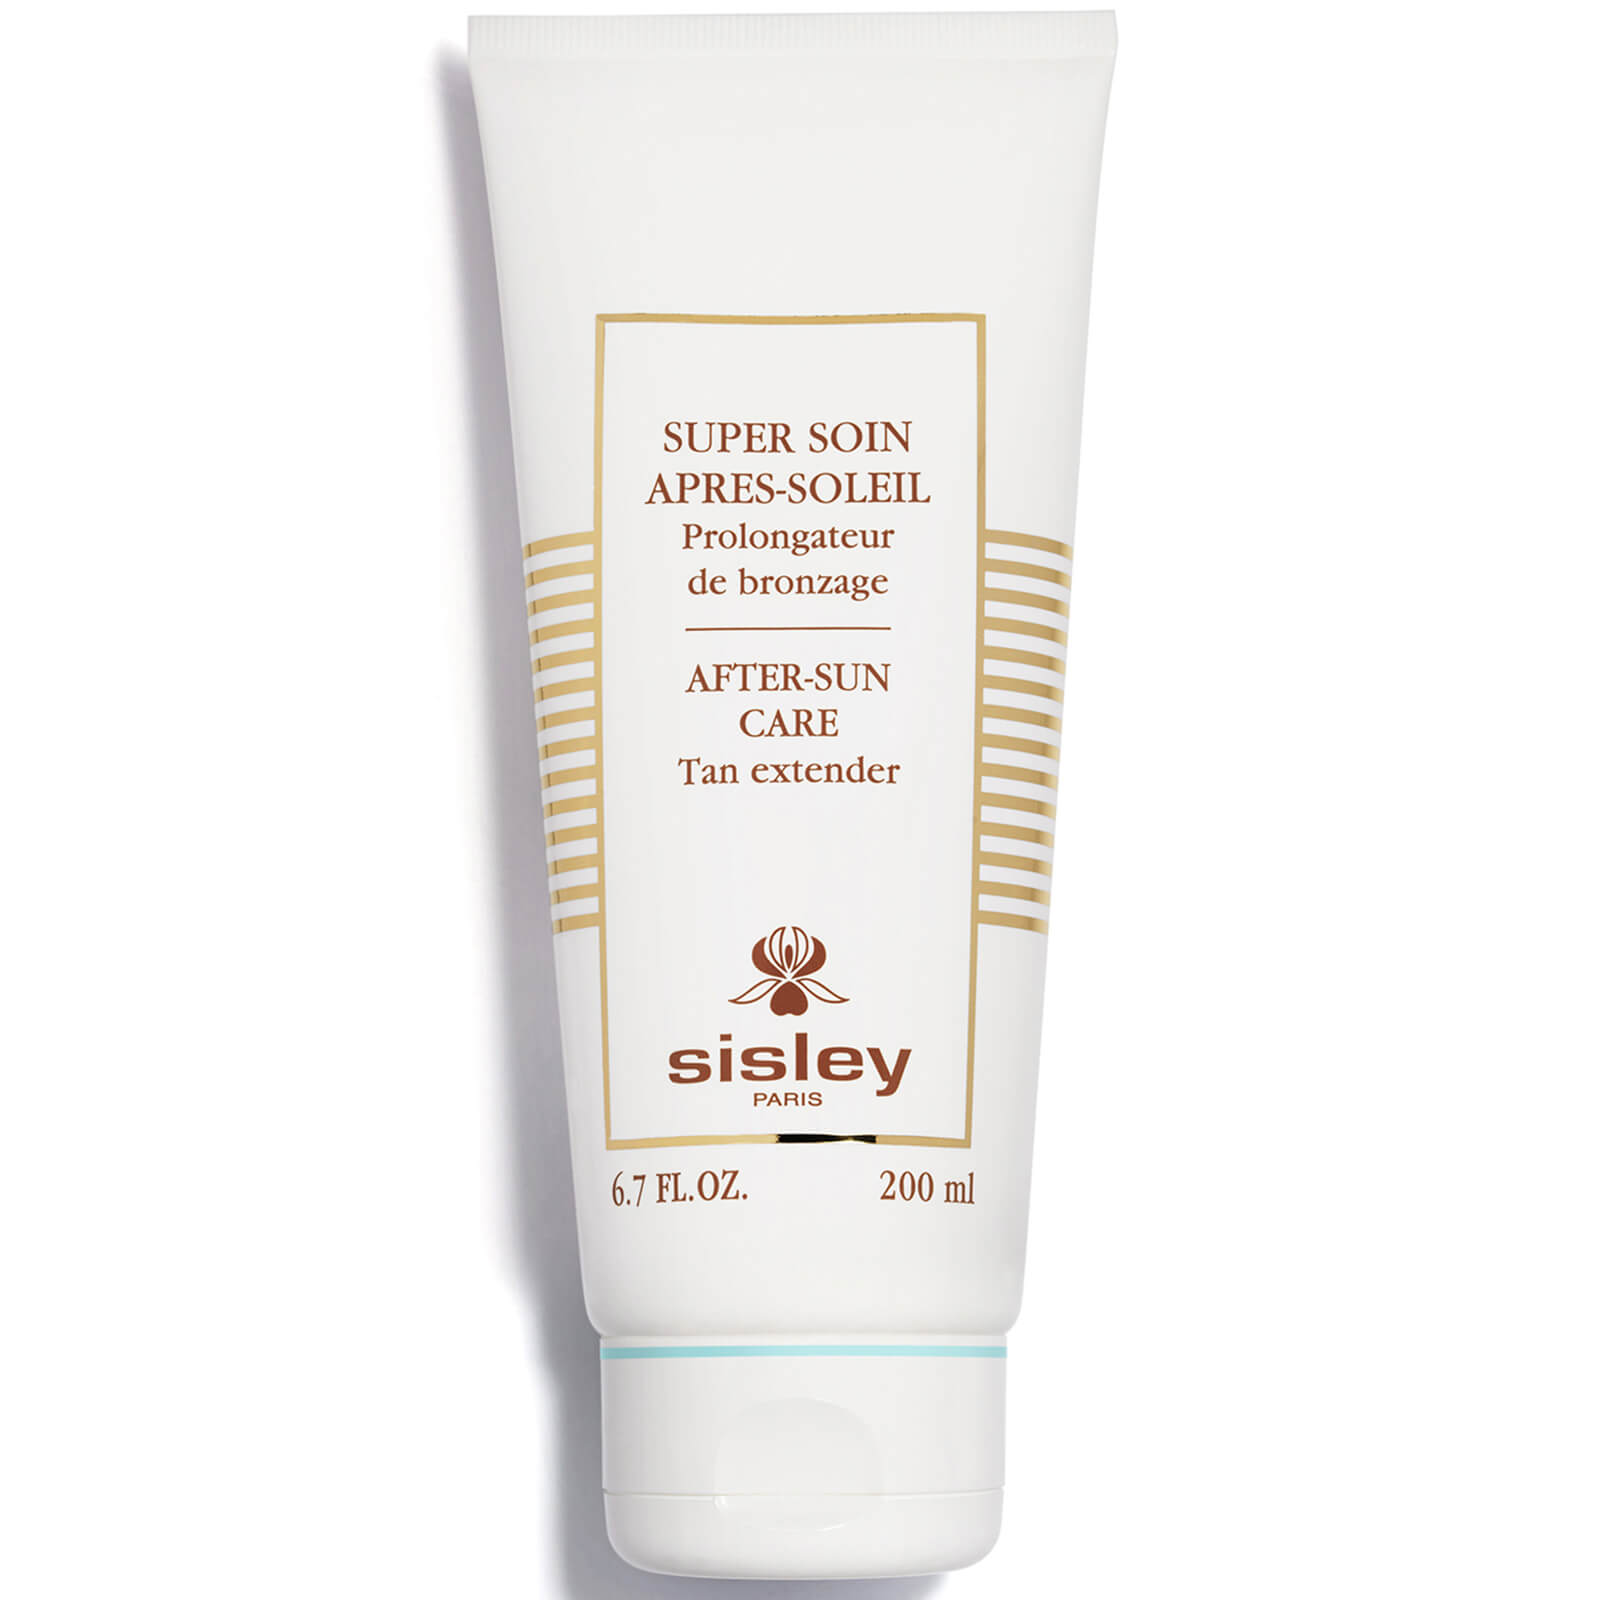 Photos - Sun Skin Care Sisley PARIS After-Sun Care Tan Extender 200ml 